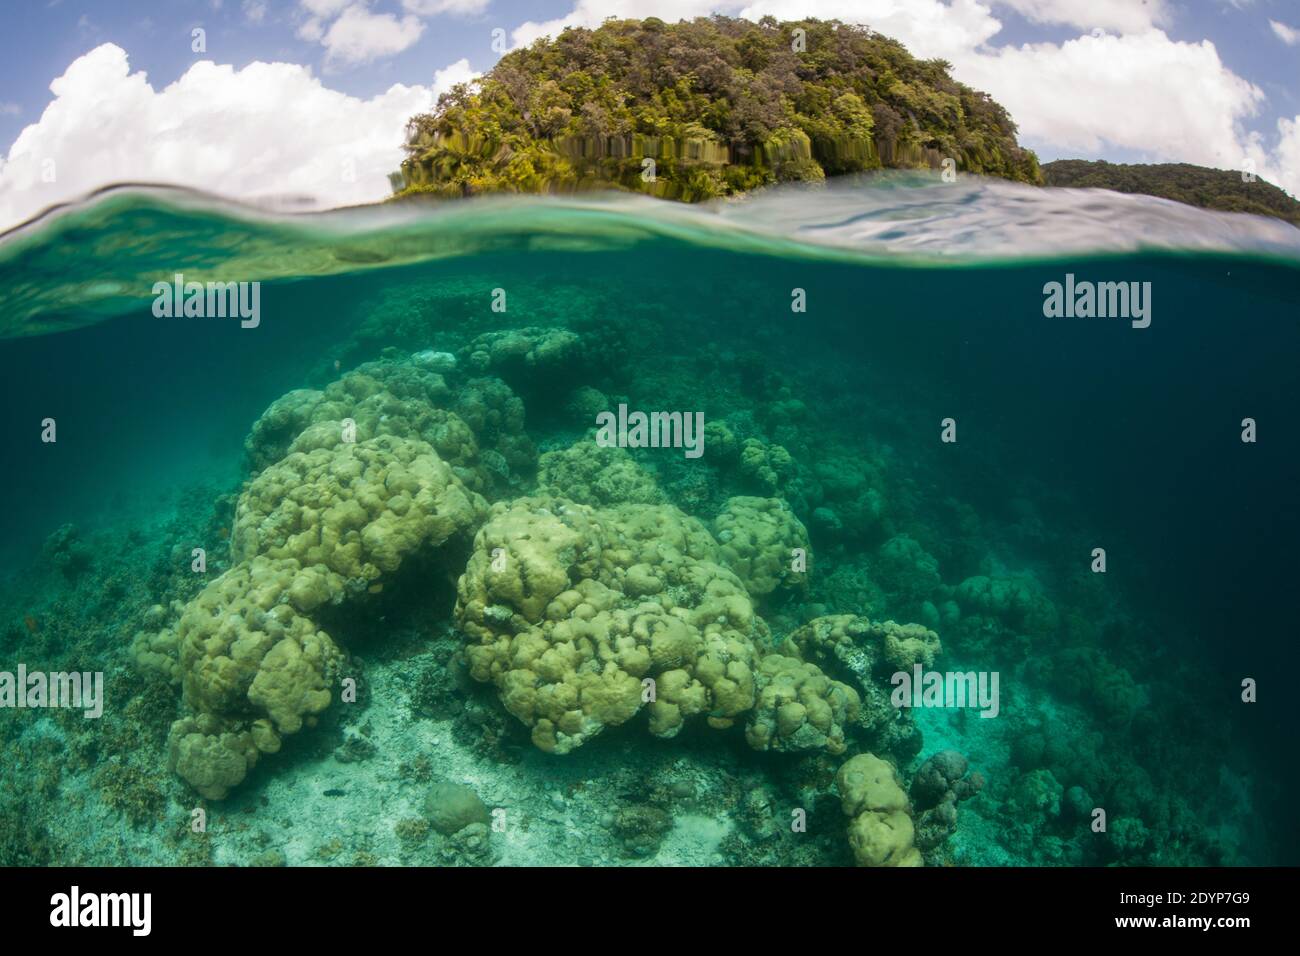 Korallen gedeihen inmitten der Kalksteininseln von Palau.Diese landschaftlich reizvolle Gruppe tropischer Mikronesian-Inseln unterstützt eine erstaunliche Vielfalt an mariner Biodiversität. Stockfoto